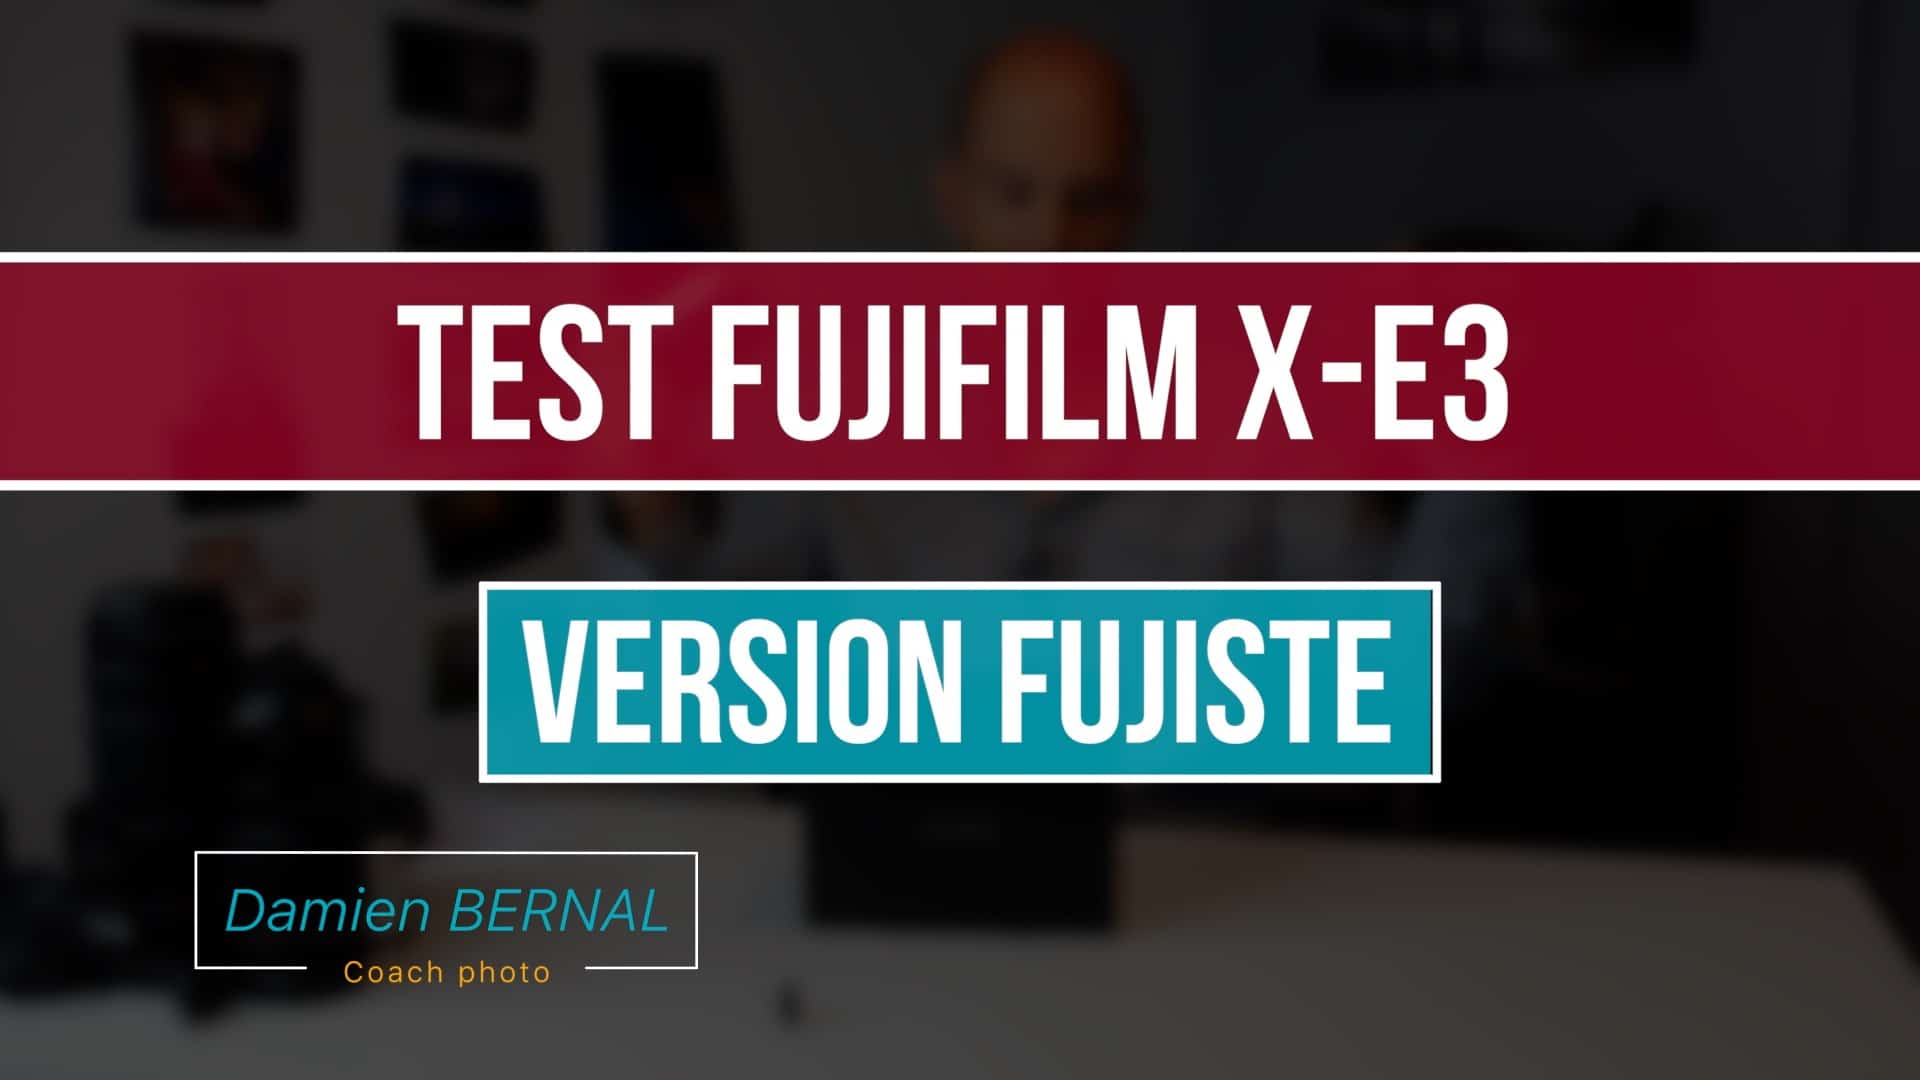 Test Fuji X-E3 (version fujiste)